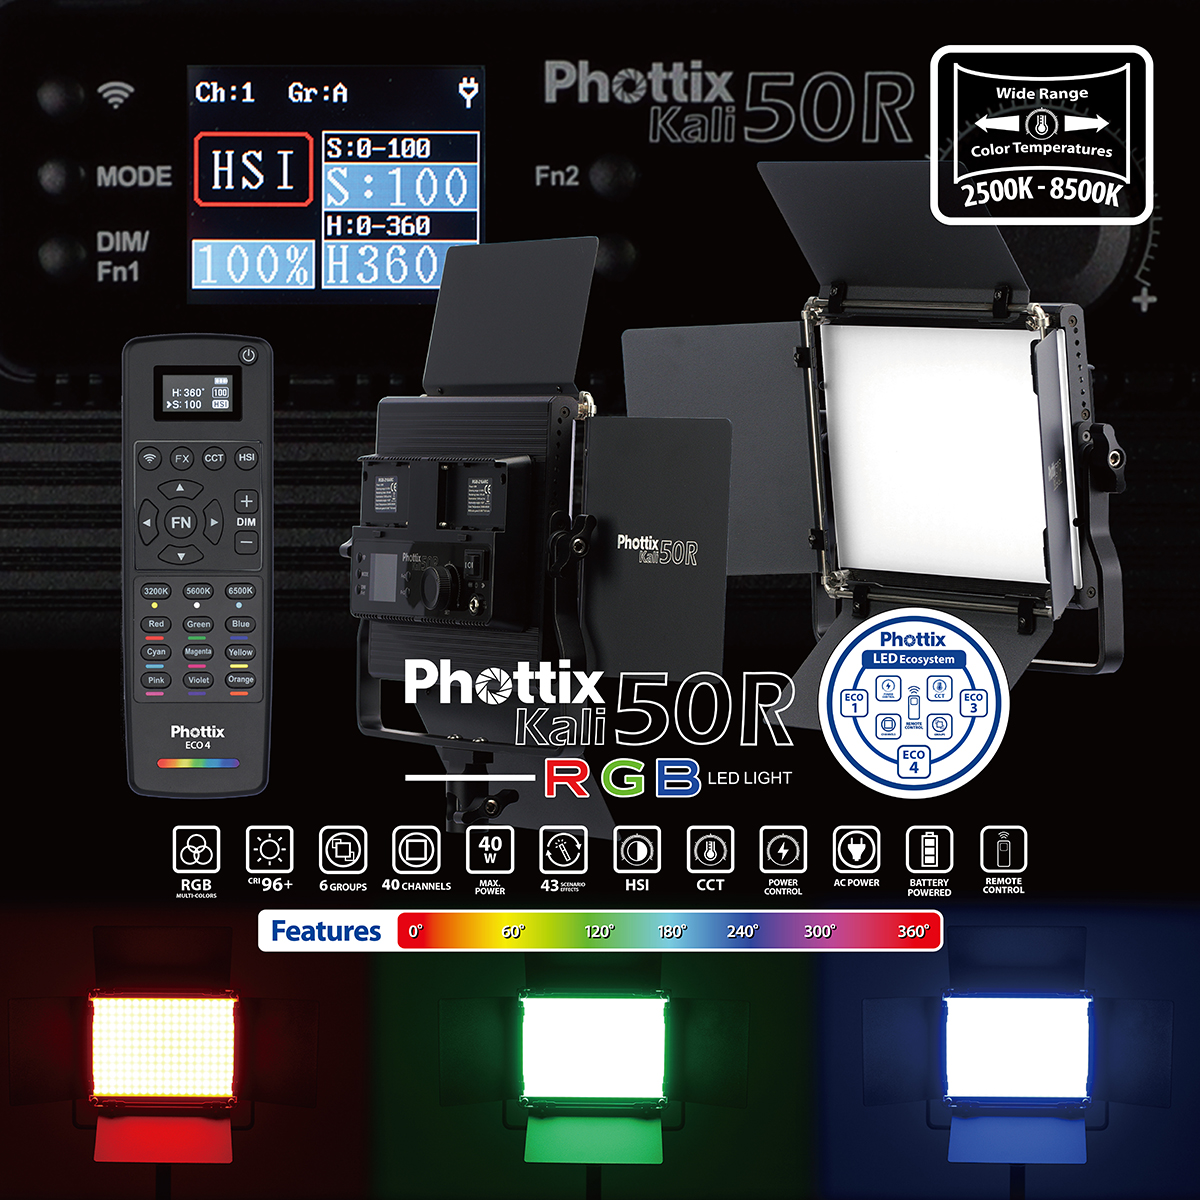 phottix-kali-50r-rgb-led-light-32.jpg